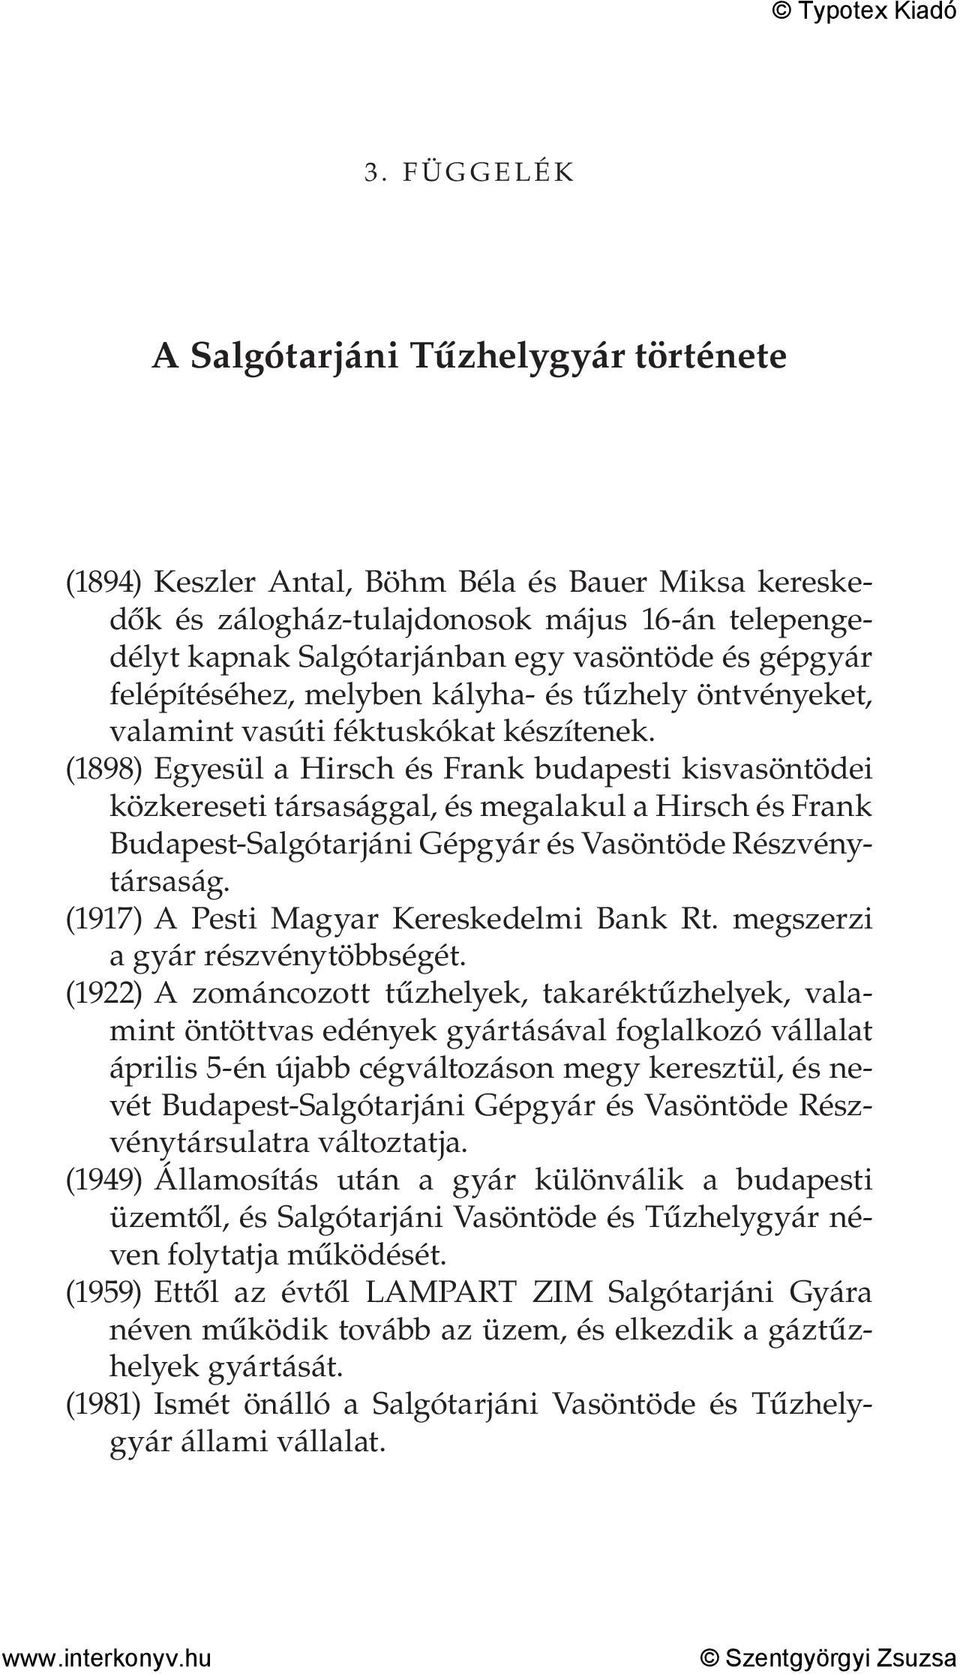 (1898) Egyesül a Hirsch és Frank budapesti kisvasöntödei közkereseti társasággal, és megalakul a Hirsch és Frank Budapest-Salgótarjáni Gépgyár és Vasöntöde Részvénytársaság.